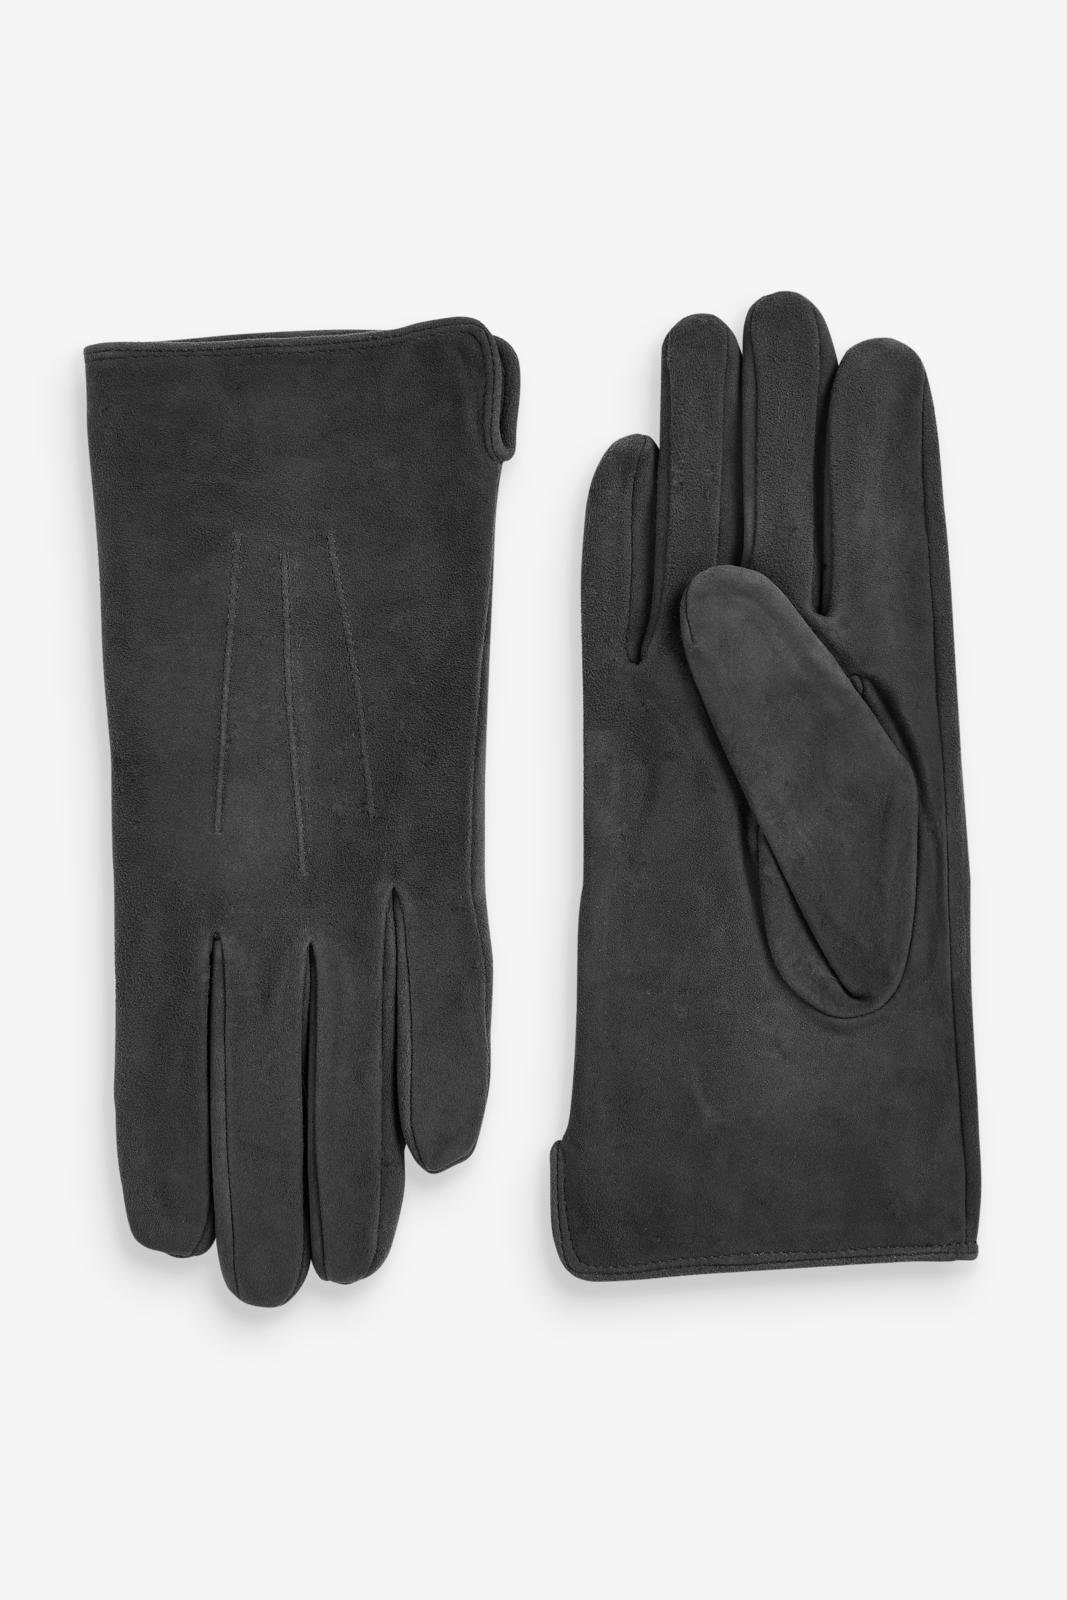 Strickhandschuhe Charcoal Grey Next Handschuhe